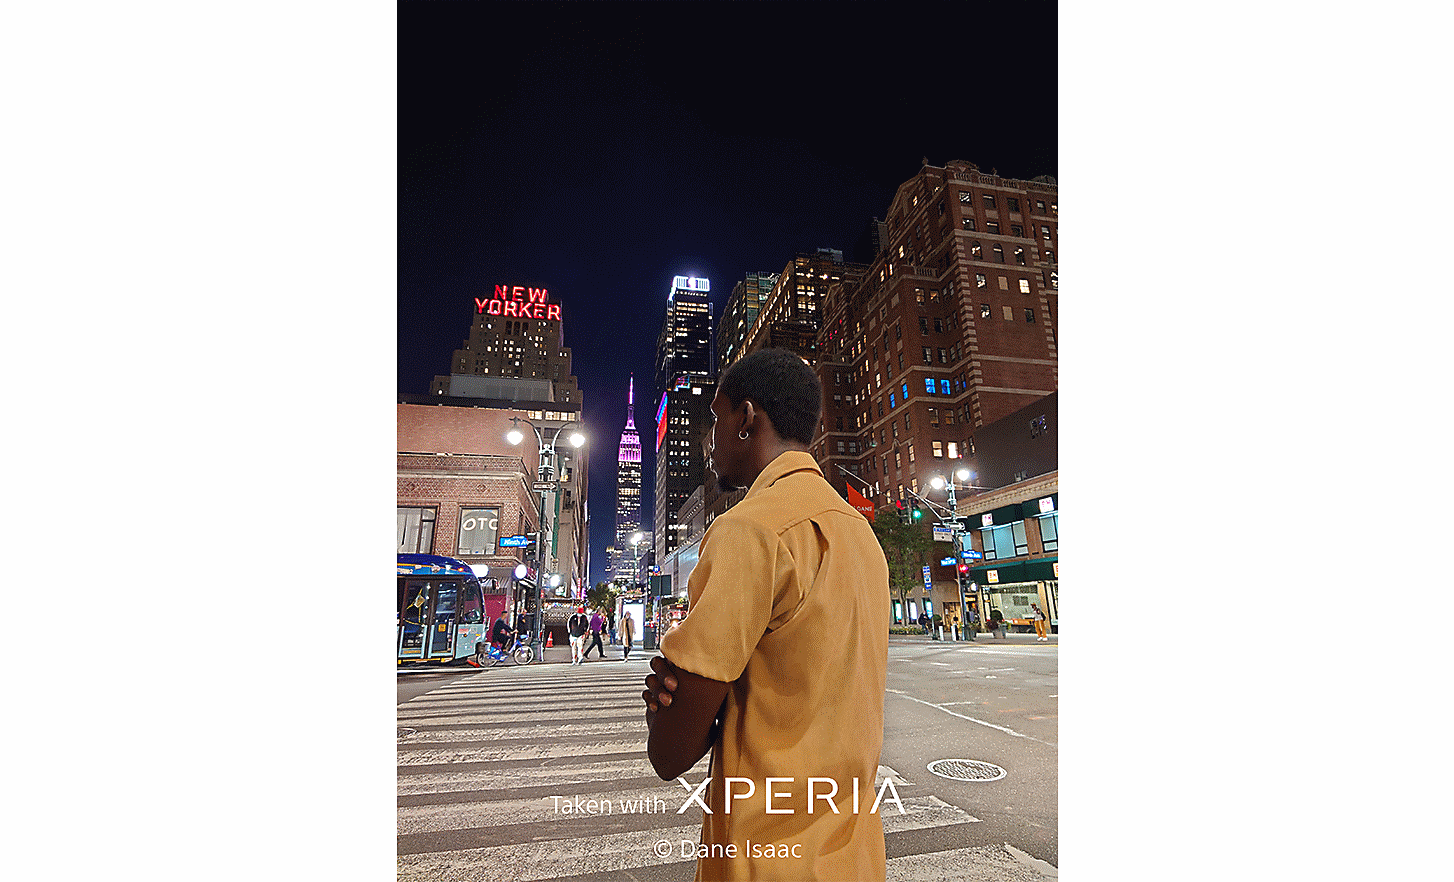 Străzile unui oraș pe timp de noapte cu un bărbat în prim-plan. Textul: „Realizat cu XPERIA ©Dane Isaac”.